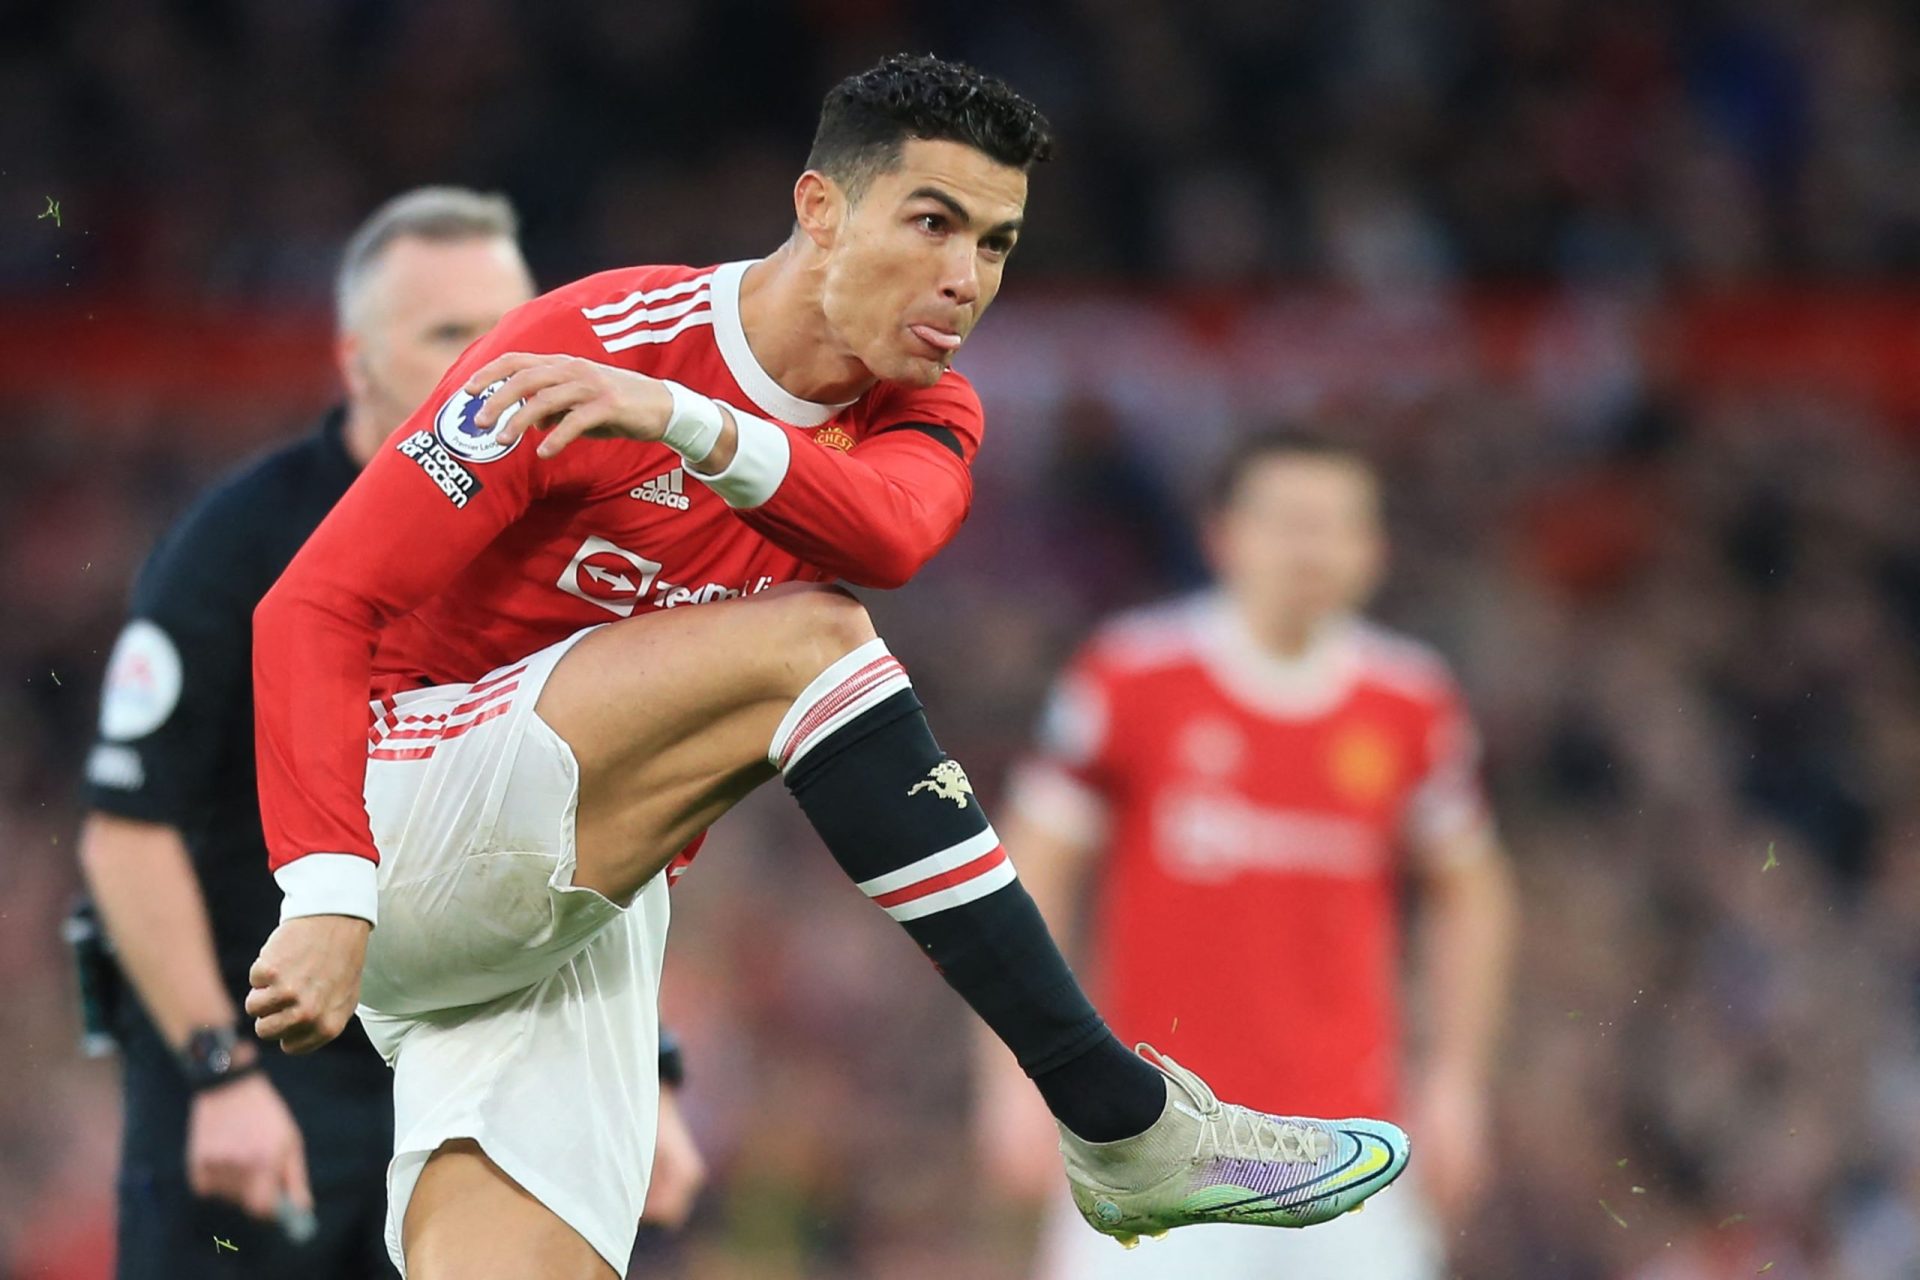 Man United investiga incidente em que Cristiano Ronaldo parece atirar telemóvel de adepto ao chão